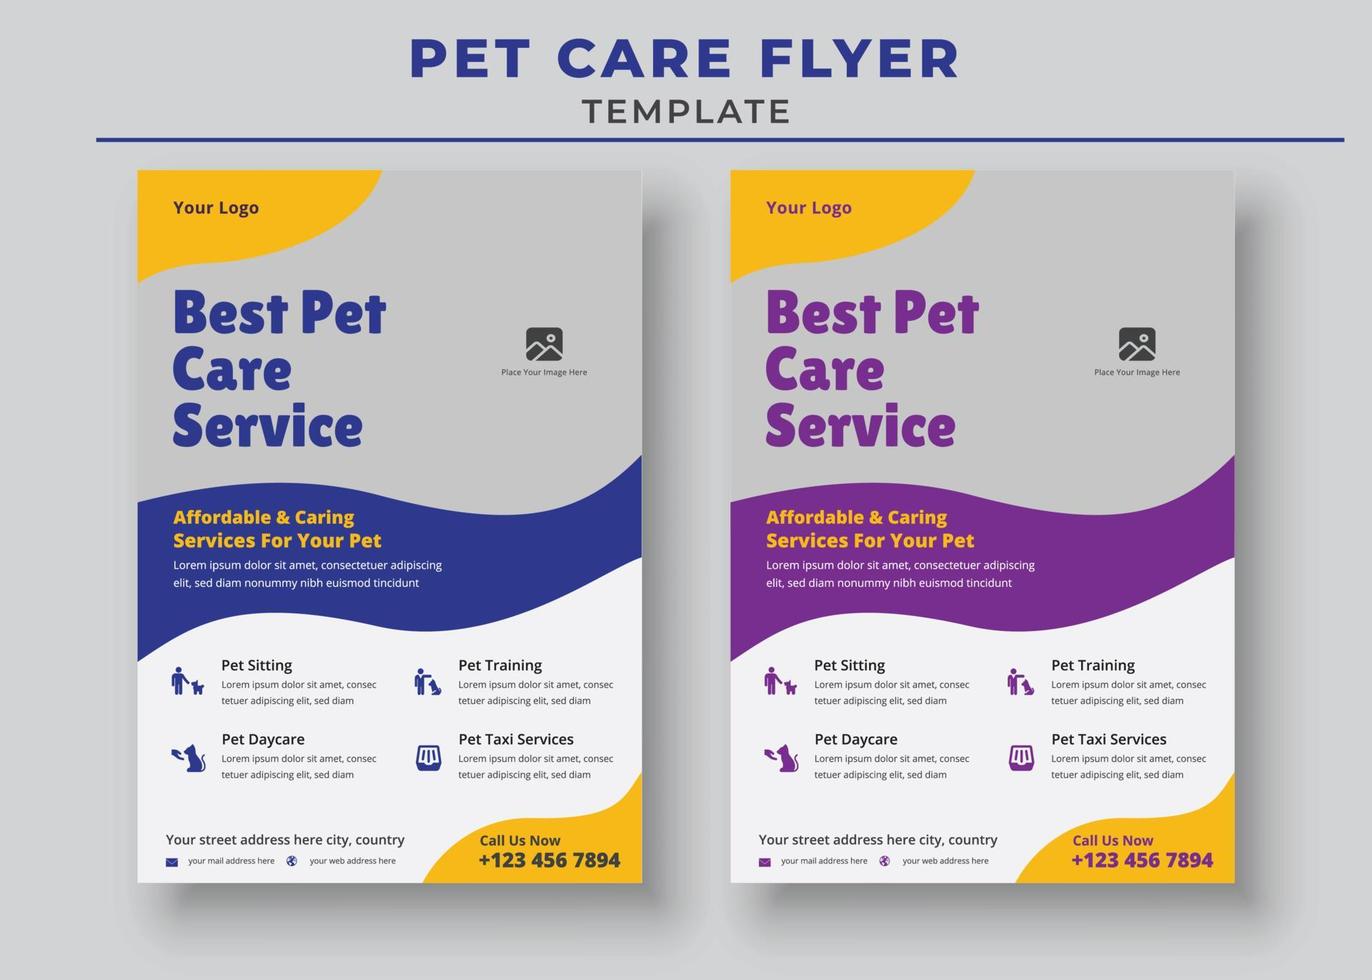 affisch för bästa husdjursvårdstjänst, mall för flygblad för husdjursvård, reklambladsmall för djurpassning, reklambladsmall för sällskapsdjur vandrare vektor